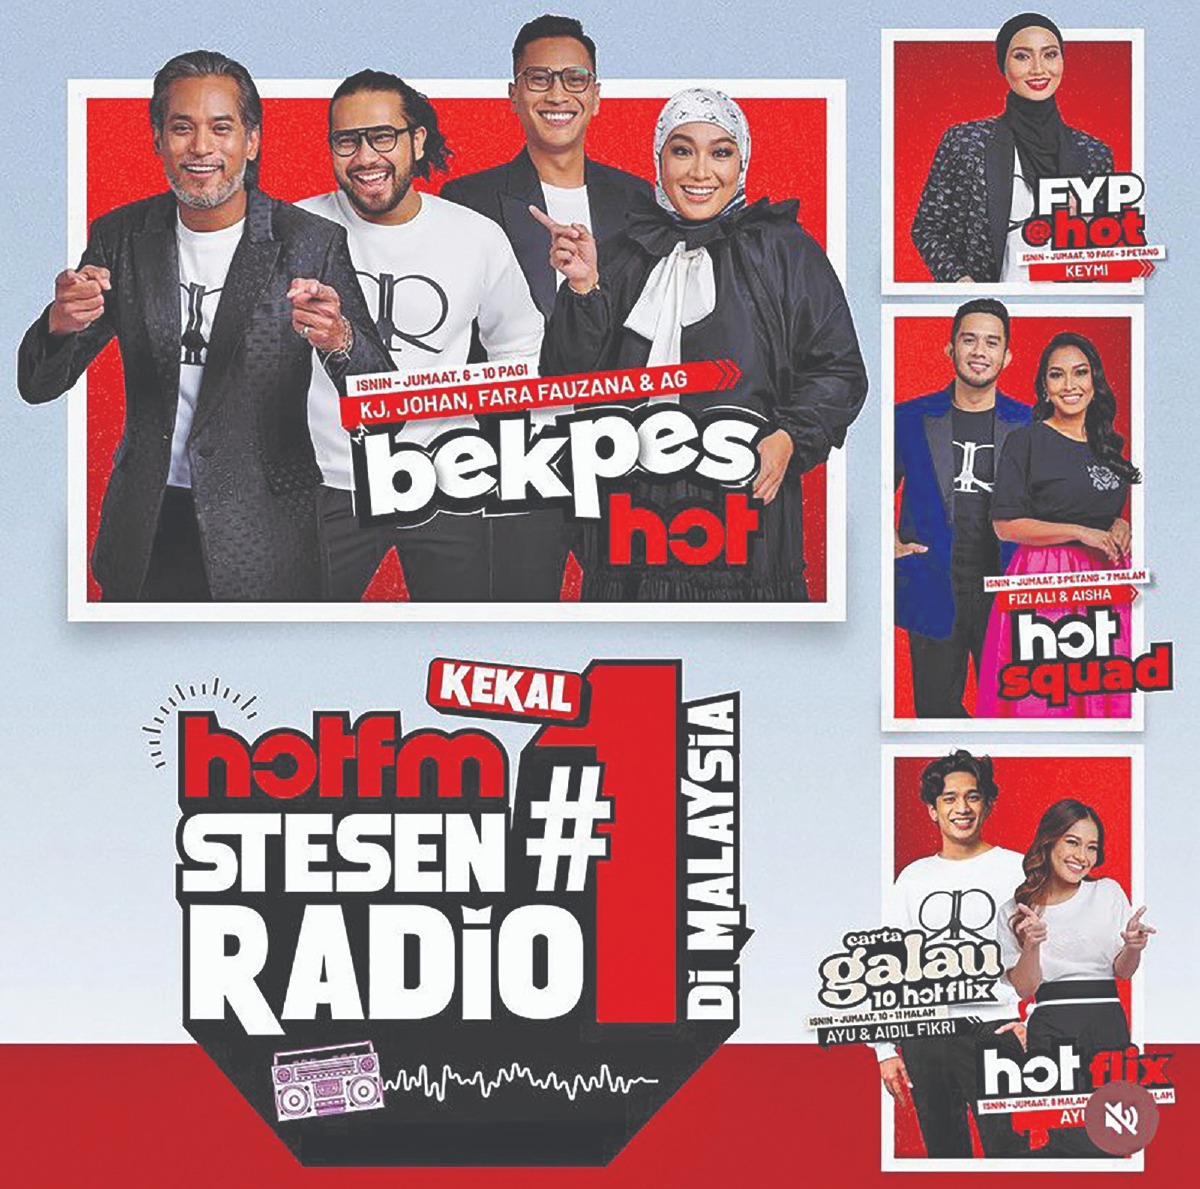 HOT FM kekal sebagai stesen radio nombor satu di Malaysia untuk kali ketiga berturut-turut, dengan hampir empat juta pendengar mingguan, hasil daripada kempen yang berjaya dilaksanakan.